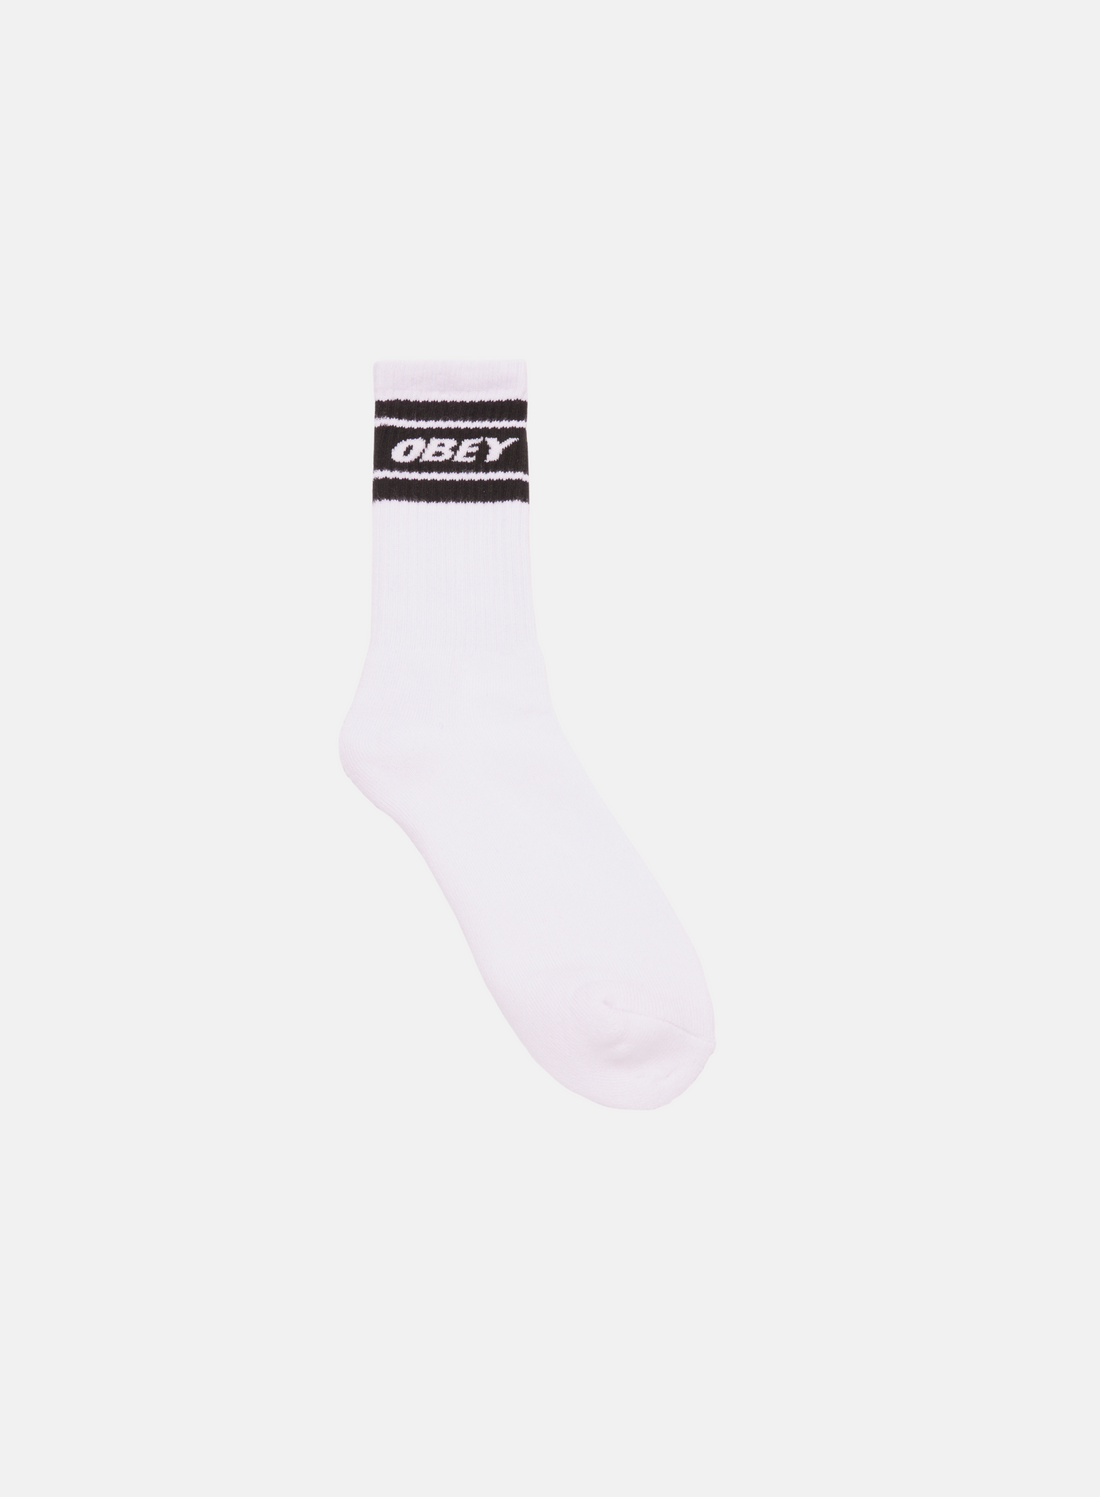 OBEY Cooper II Socks White/Black - Hympala Store 